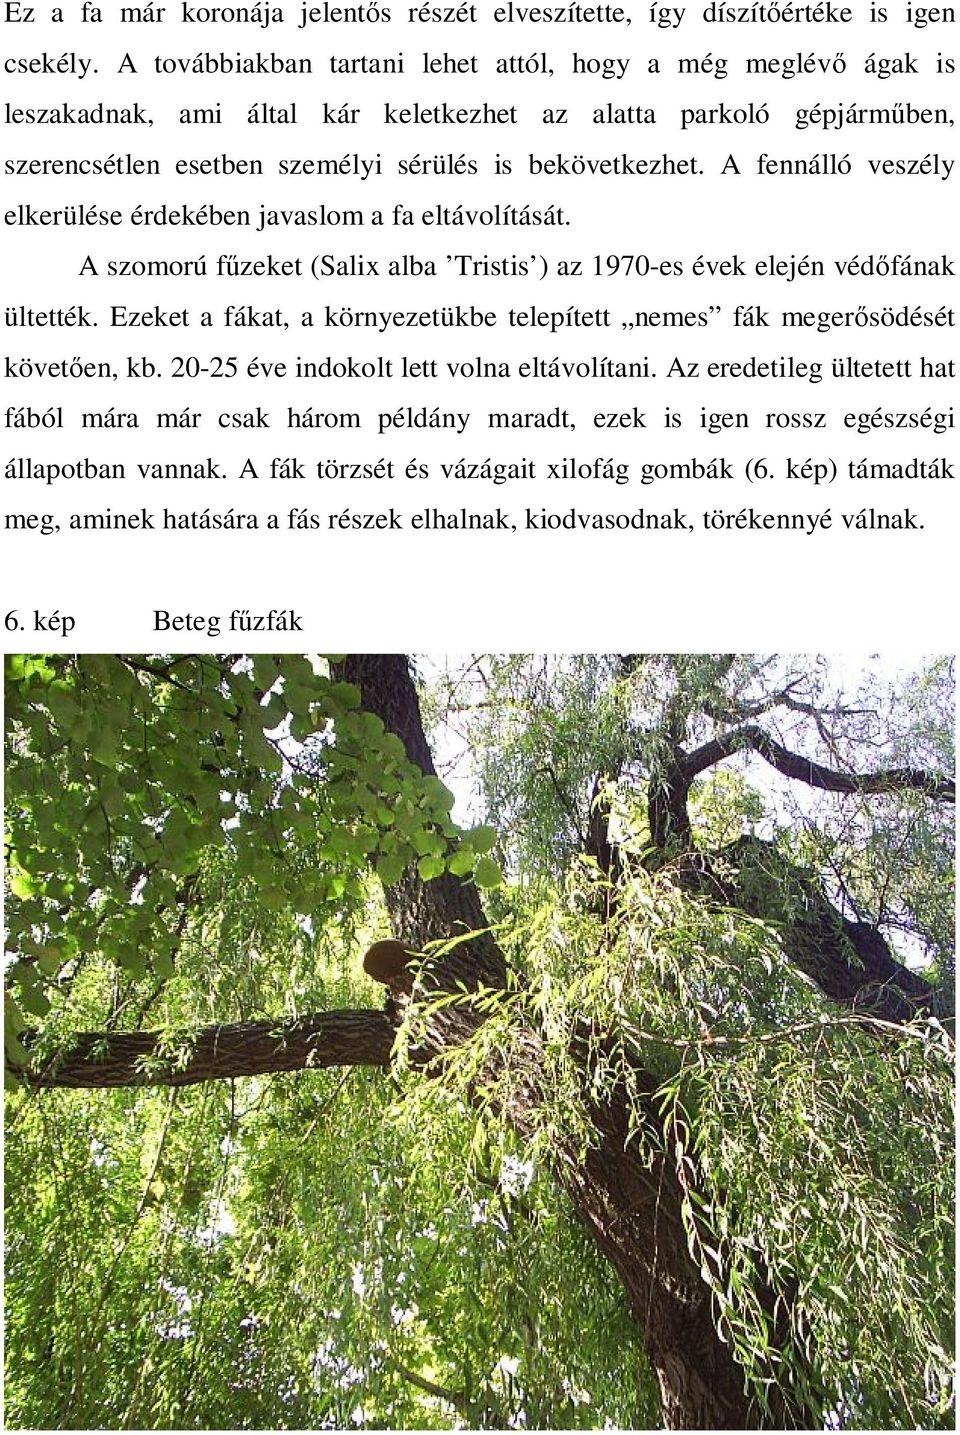 A fennálló veszély elkerülése érdekében javaslom a fa eltávolítását. A szomorú fűzeket (Salix alba Tristis ) az 1970-es évek elején védőfának ültették.